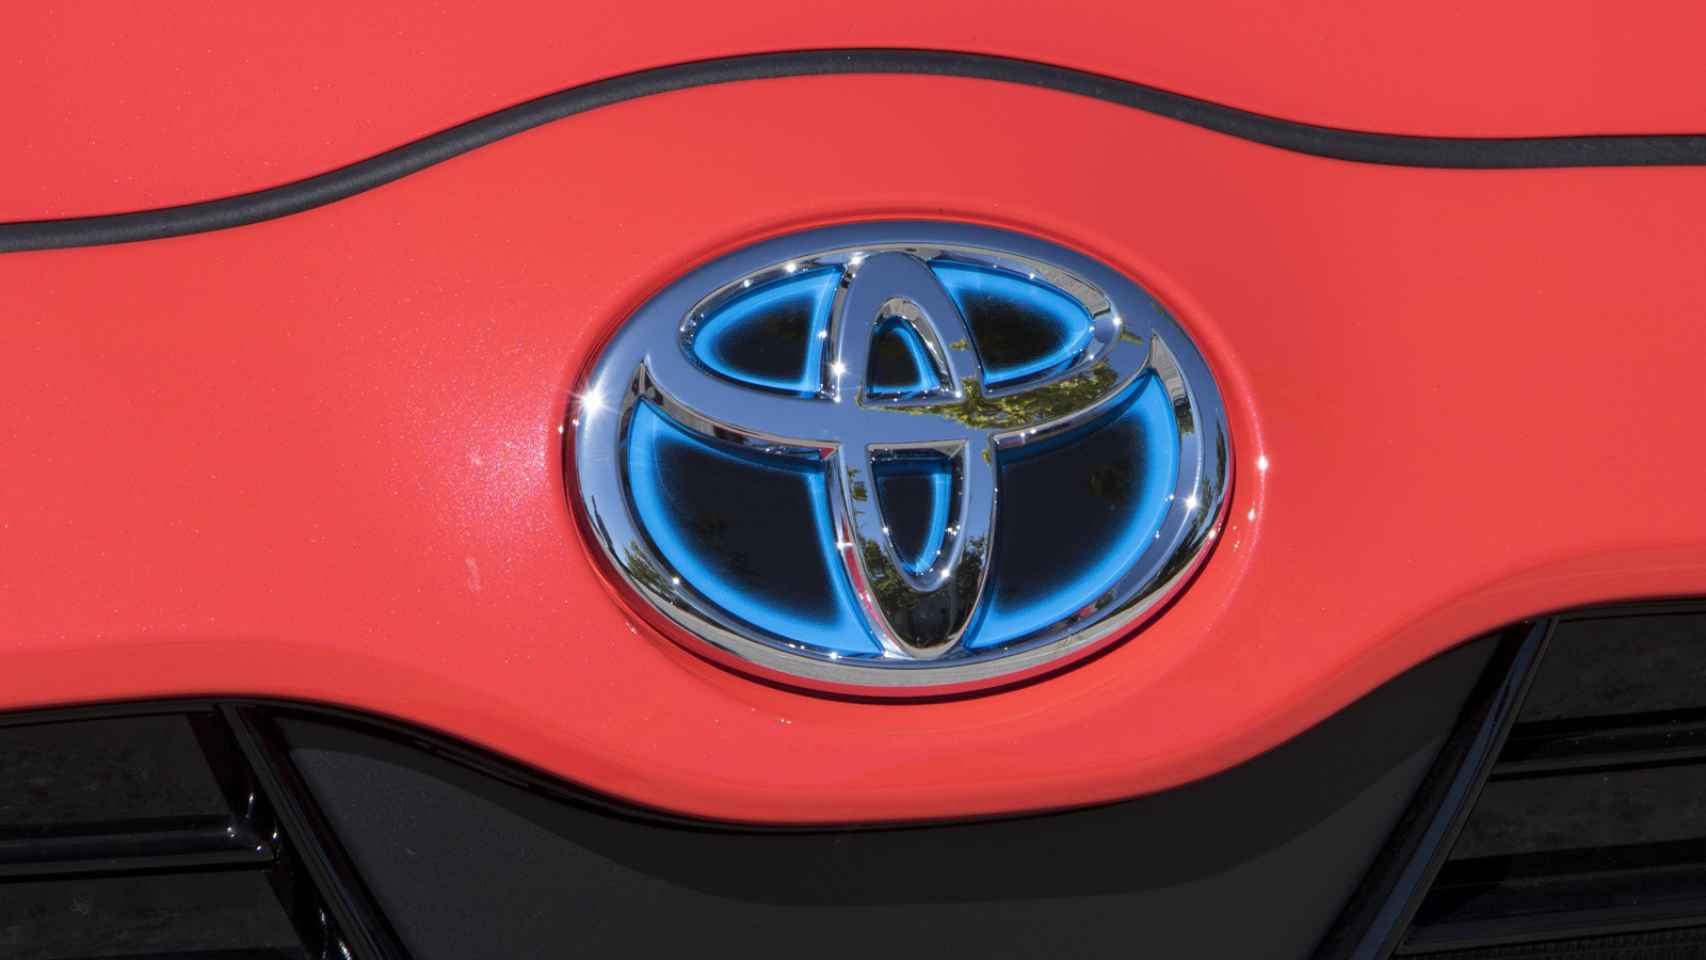 Toyota quiere colocar a este modelo en el Top 3 de la categoría.